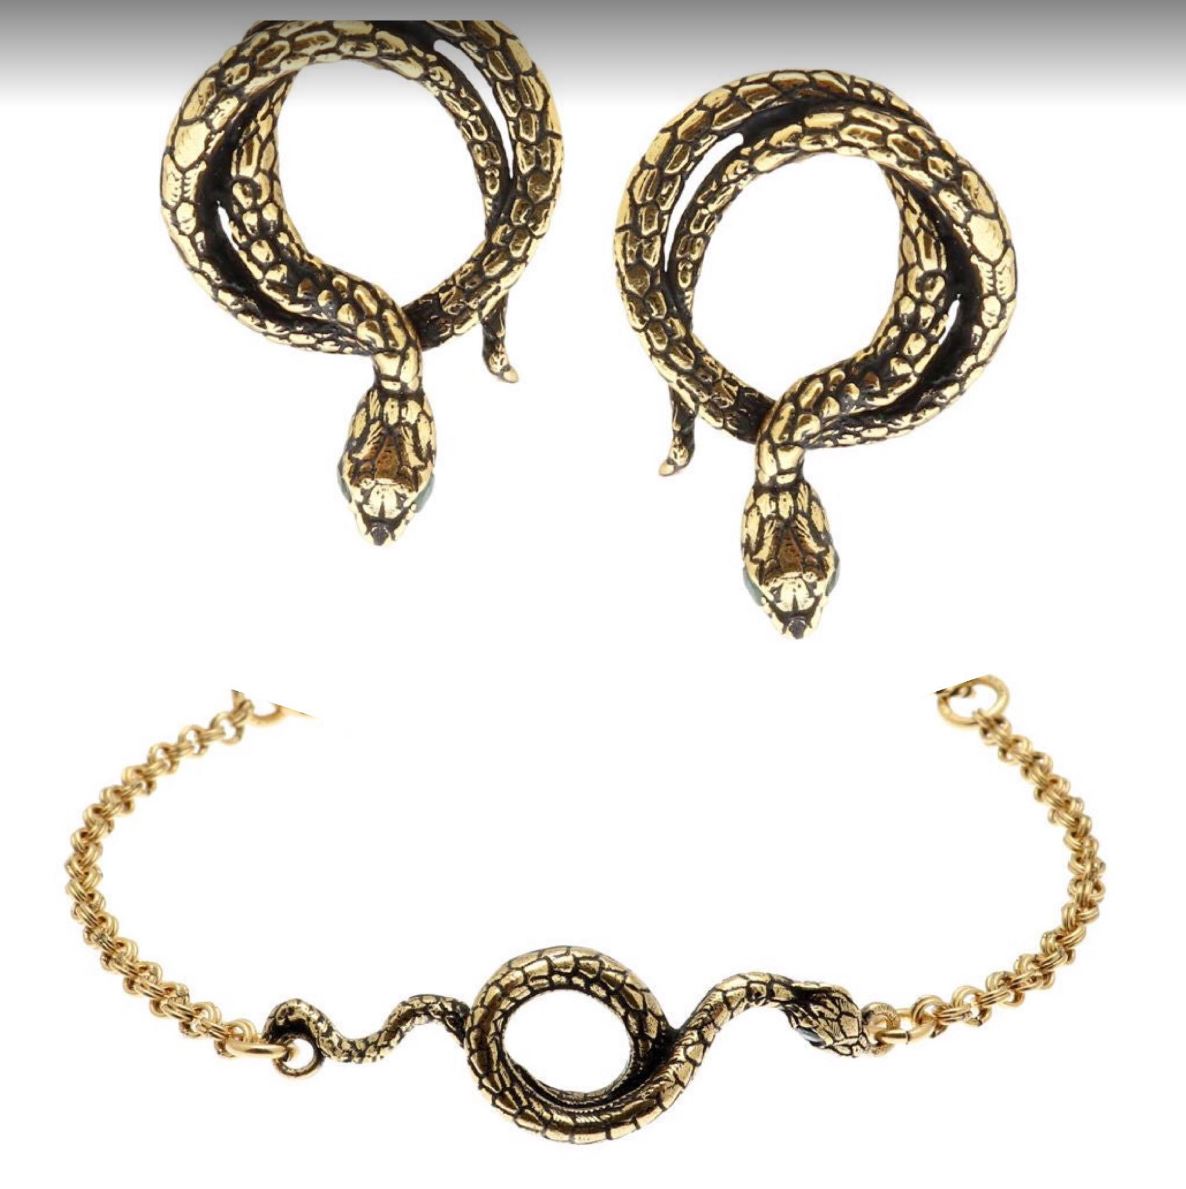 Alcozer Snake Jewelry Set / Golden Brass, Emeralds / Italian Jewelry